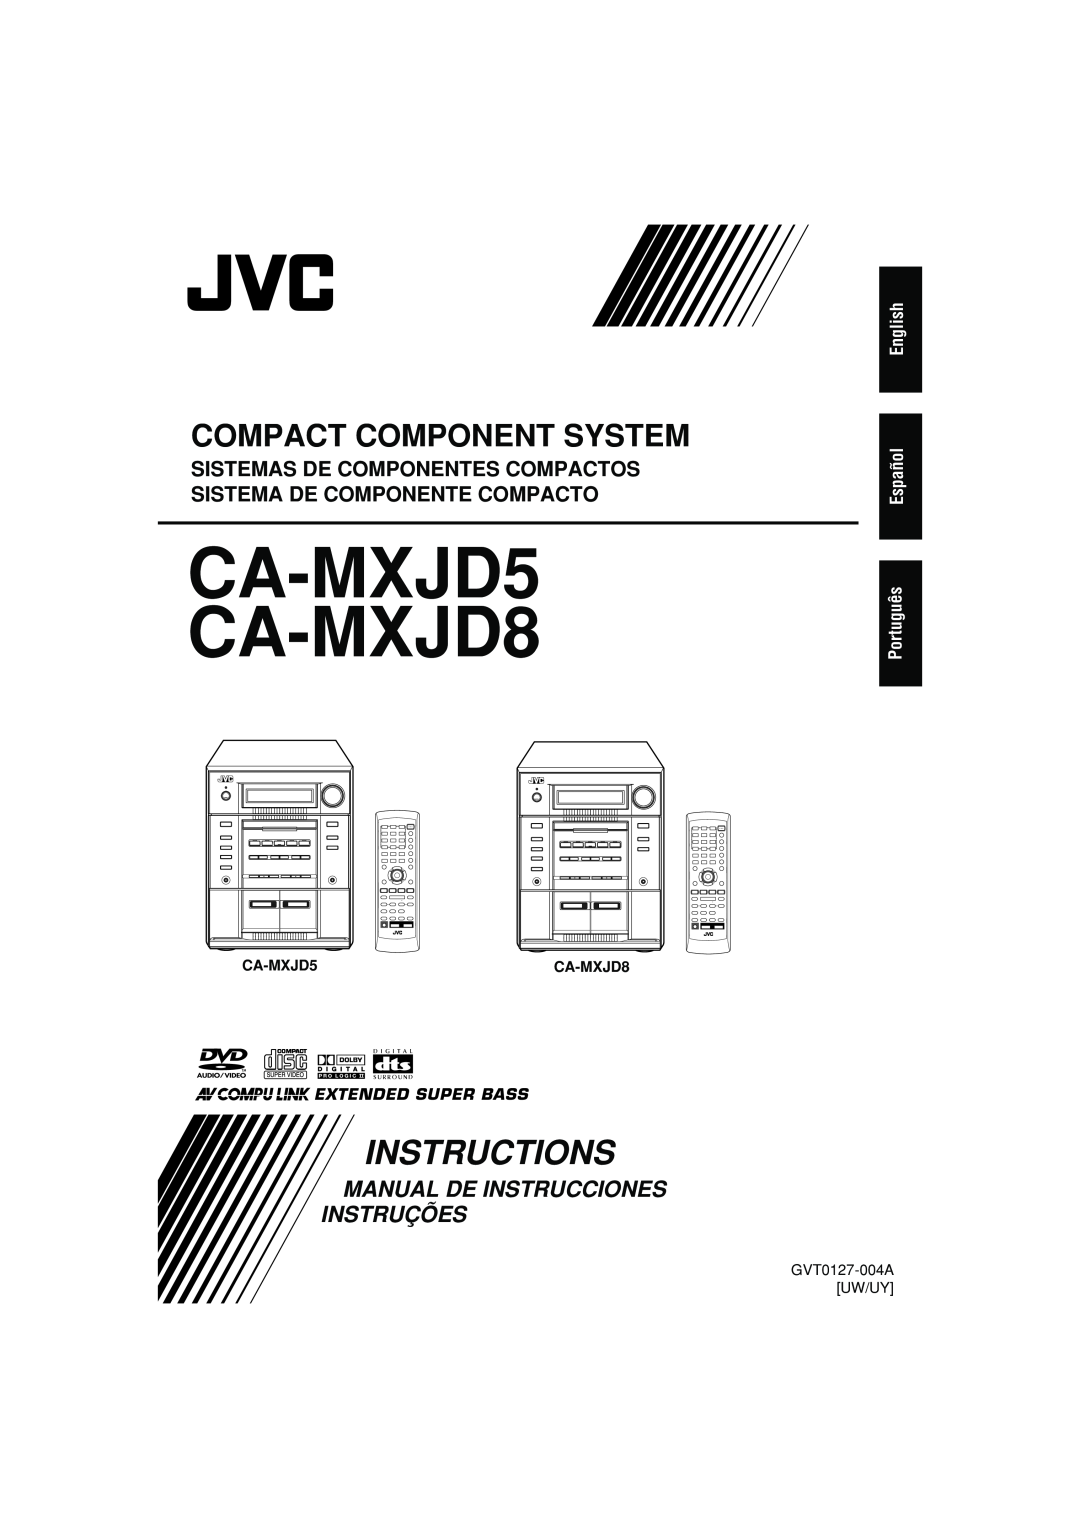 JVC CA-MXJD8UW manual CA-MXJD5 CA-MXJD8, Instructions, Compact Component System, Manual De Instrucciones Instruções 